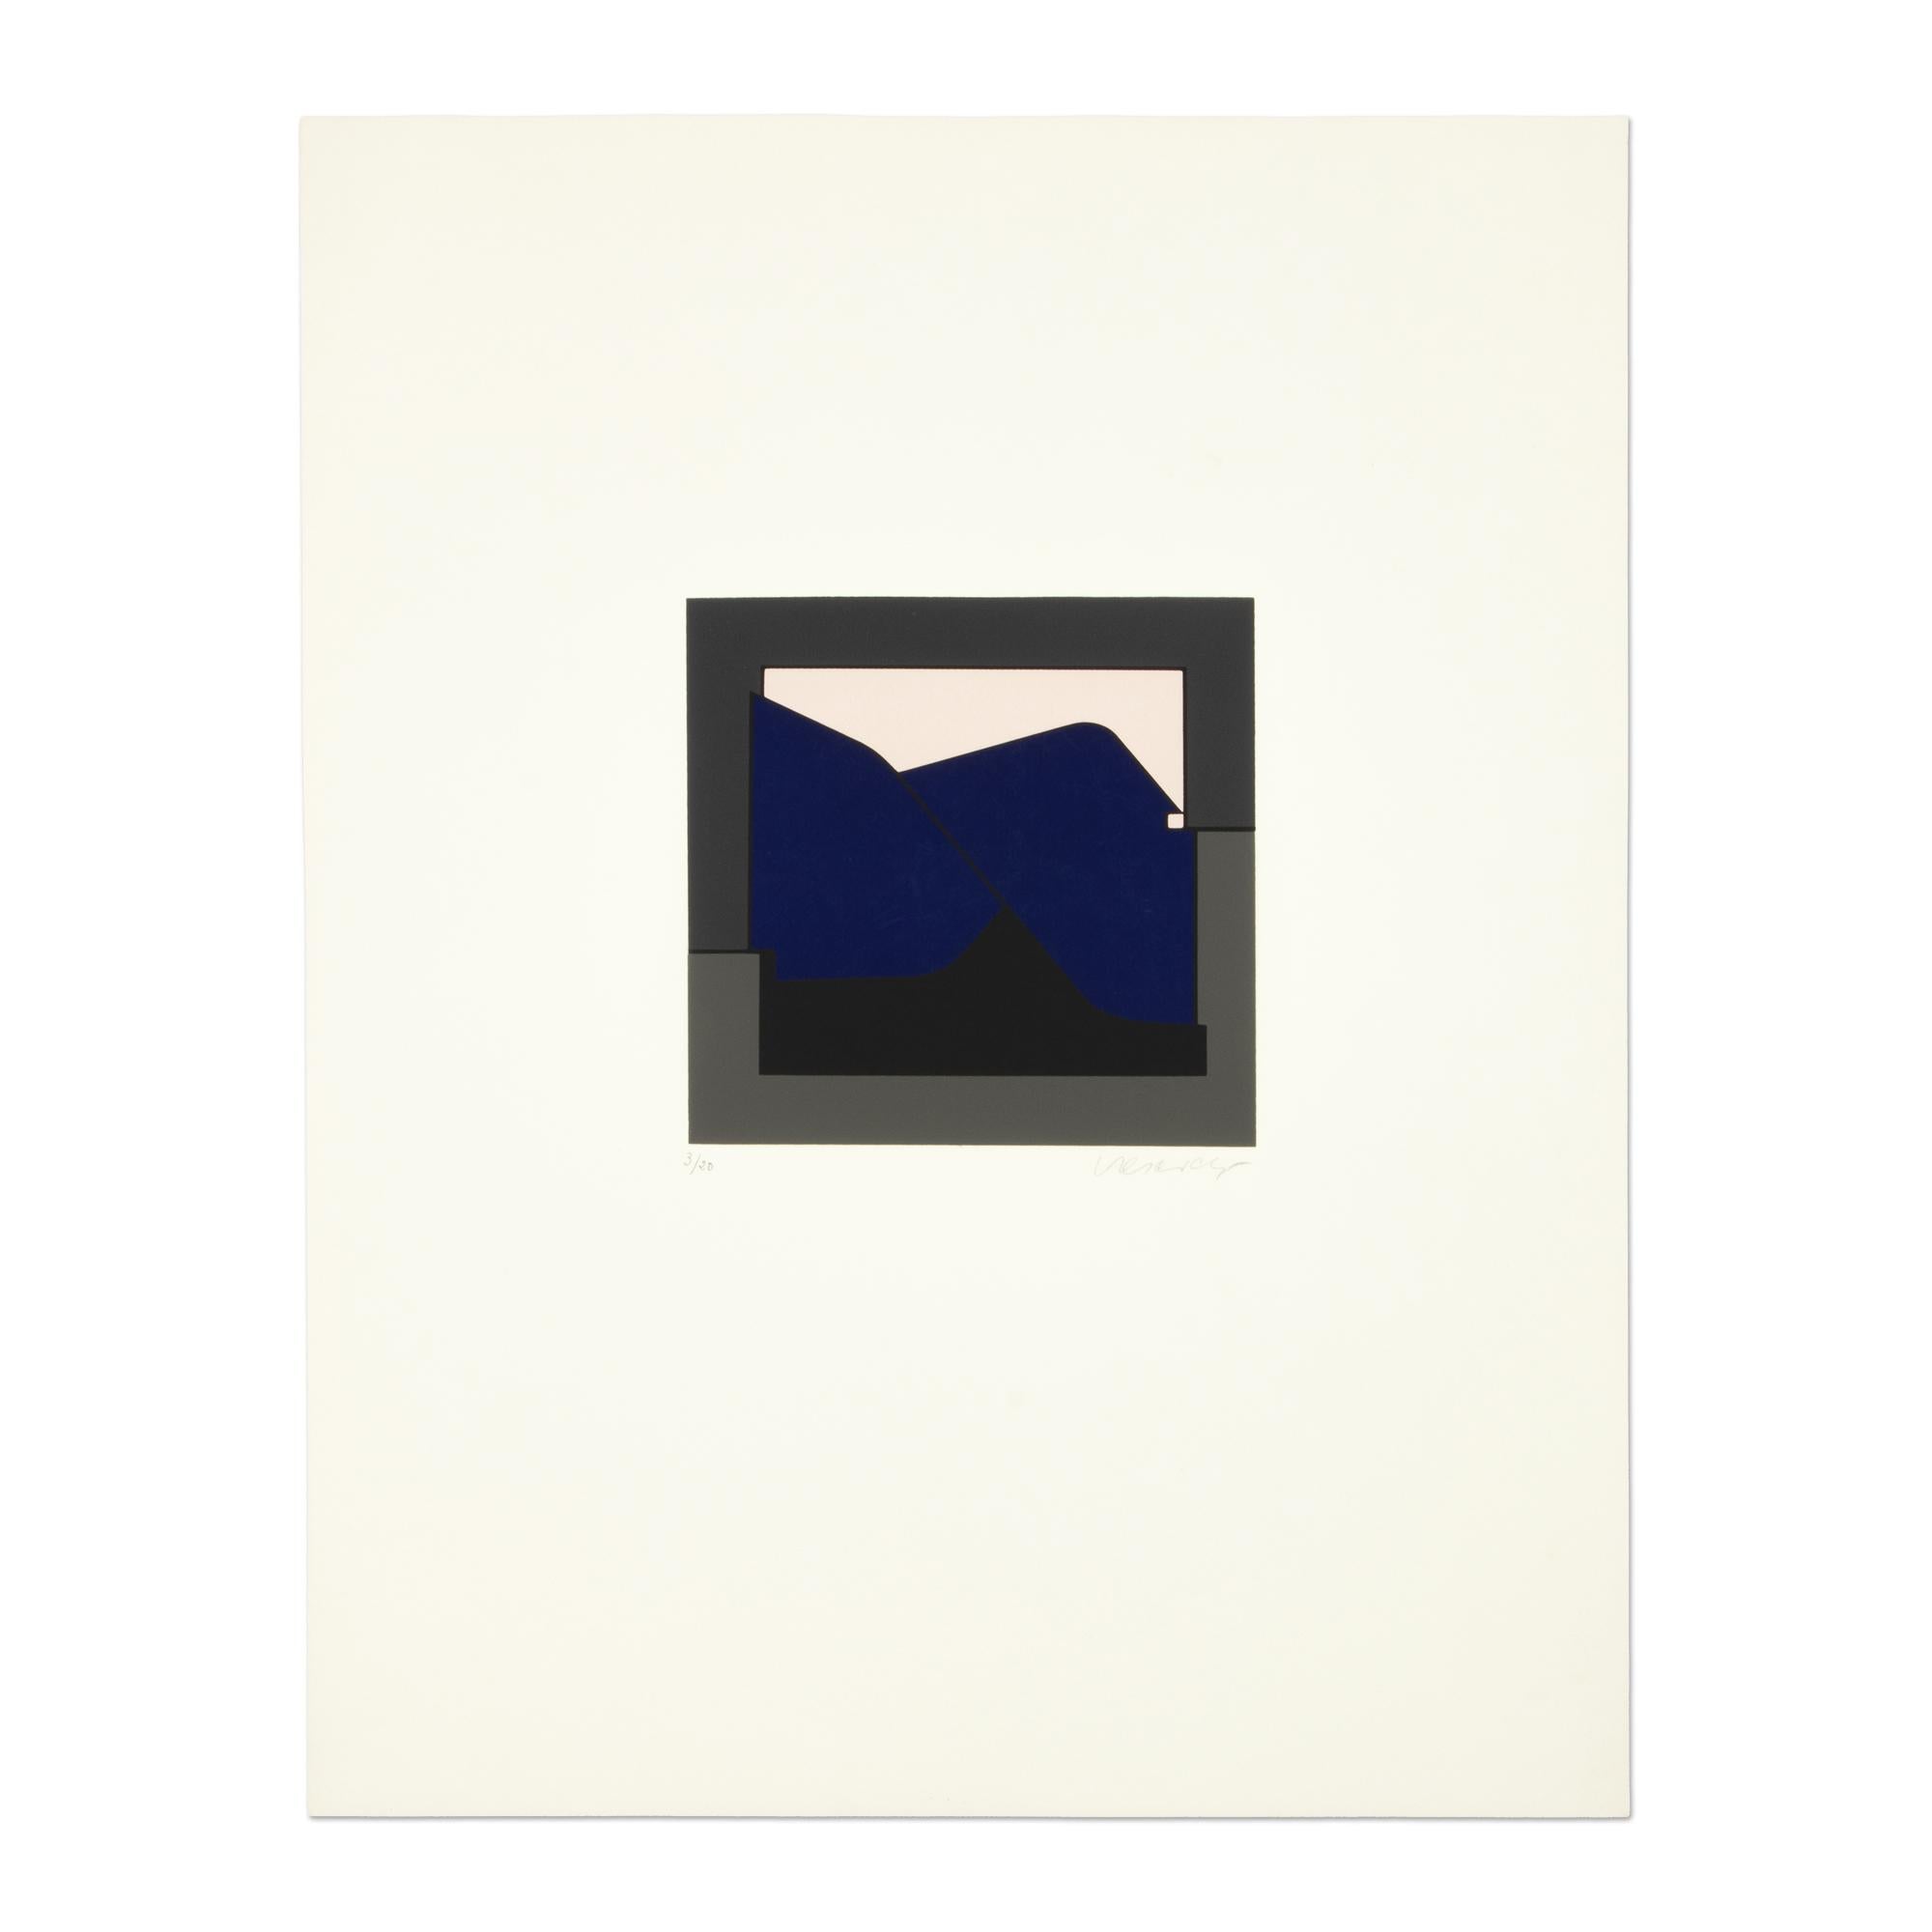 Victor Vasarely (ungarisch-französisch, 1906-1997)
Kandahar I (aus "Album I" der Galerie Denise René), 1955
Medium: Siebdruck in Farben, auf Papier
Abmessungen: 26 × 20 1/10 Zoll (66 × 51 cm)
Auflage von 100 + 20: handsigniert und